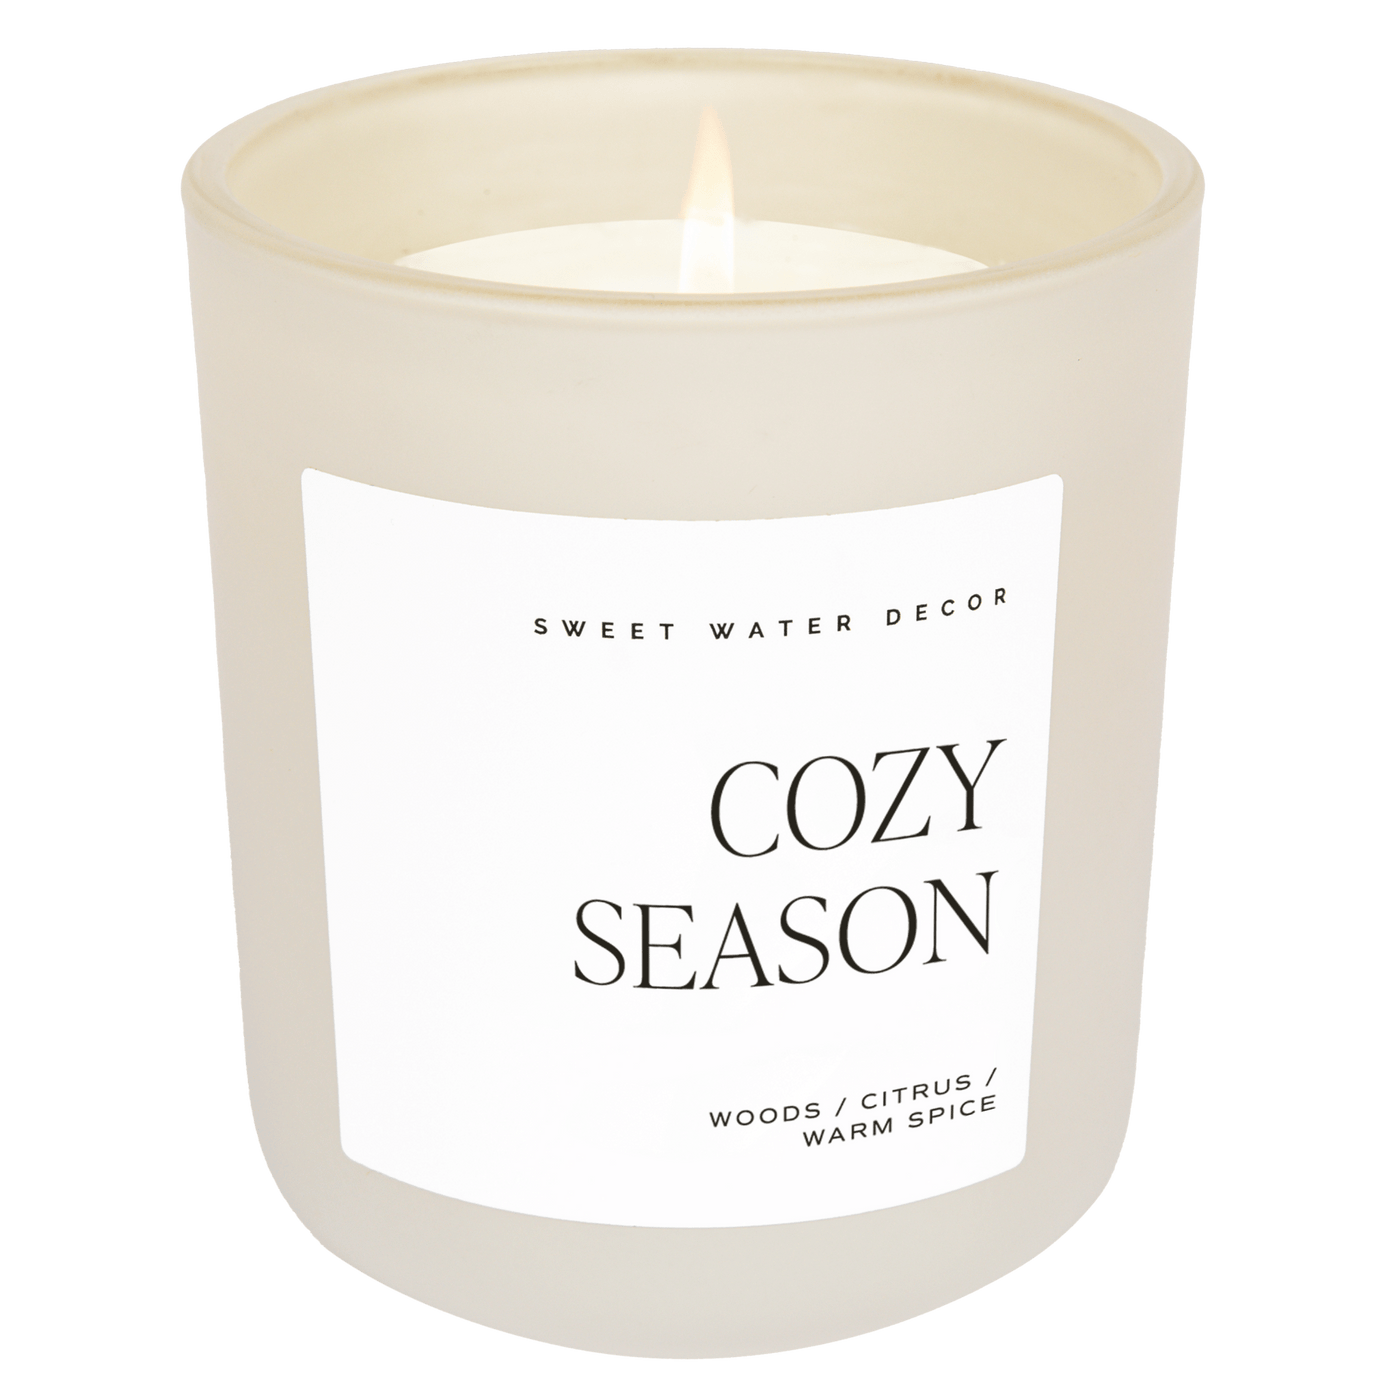 Cozy Season Soy Candle - Tan Matte Jar - 15 oz - Sweet Water Decor - Candles